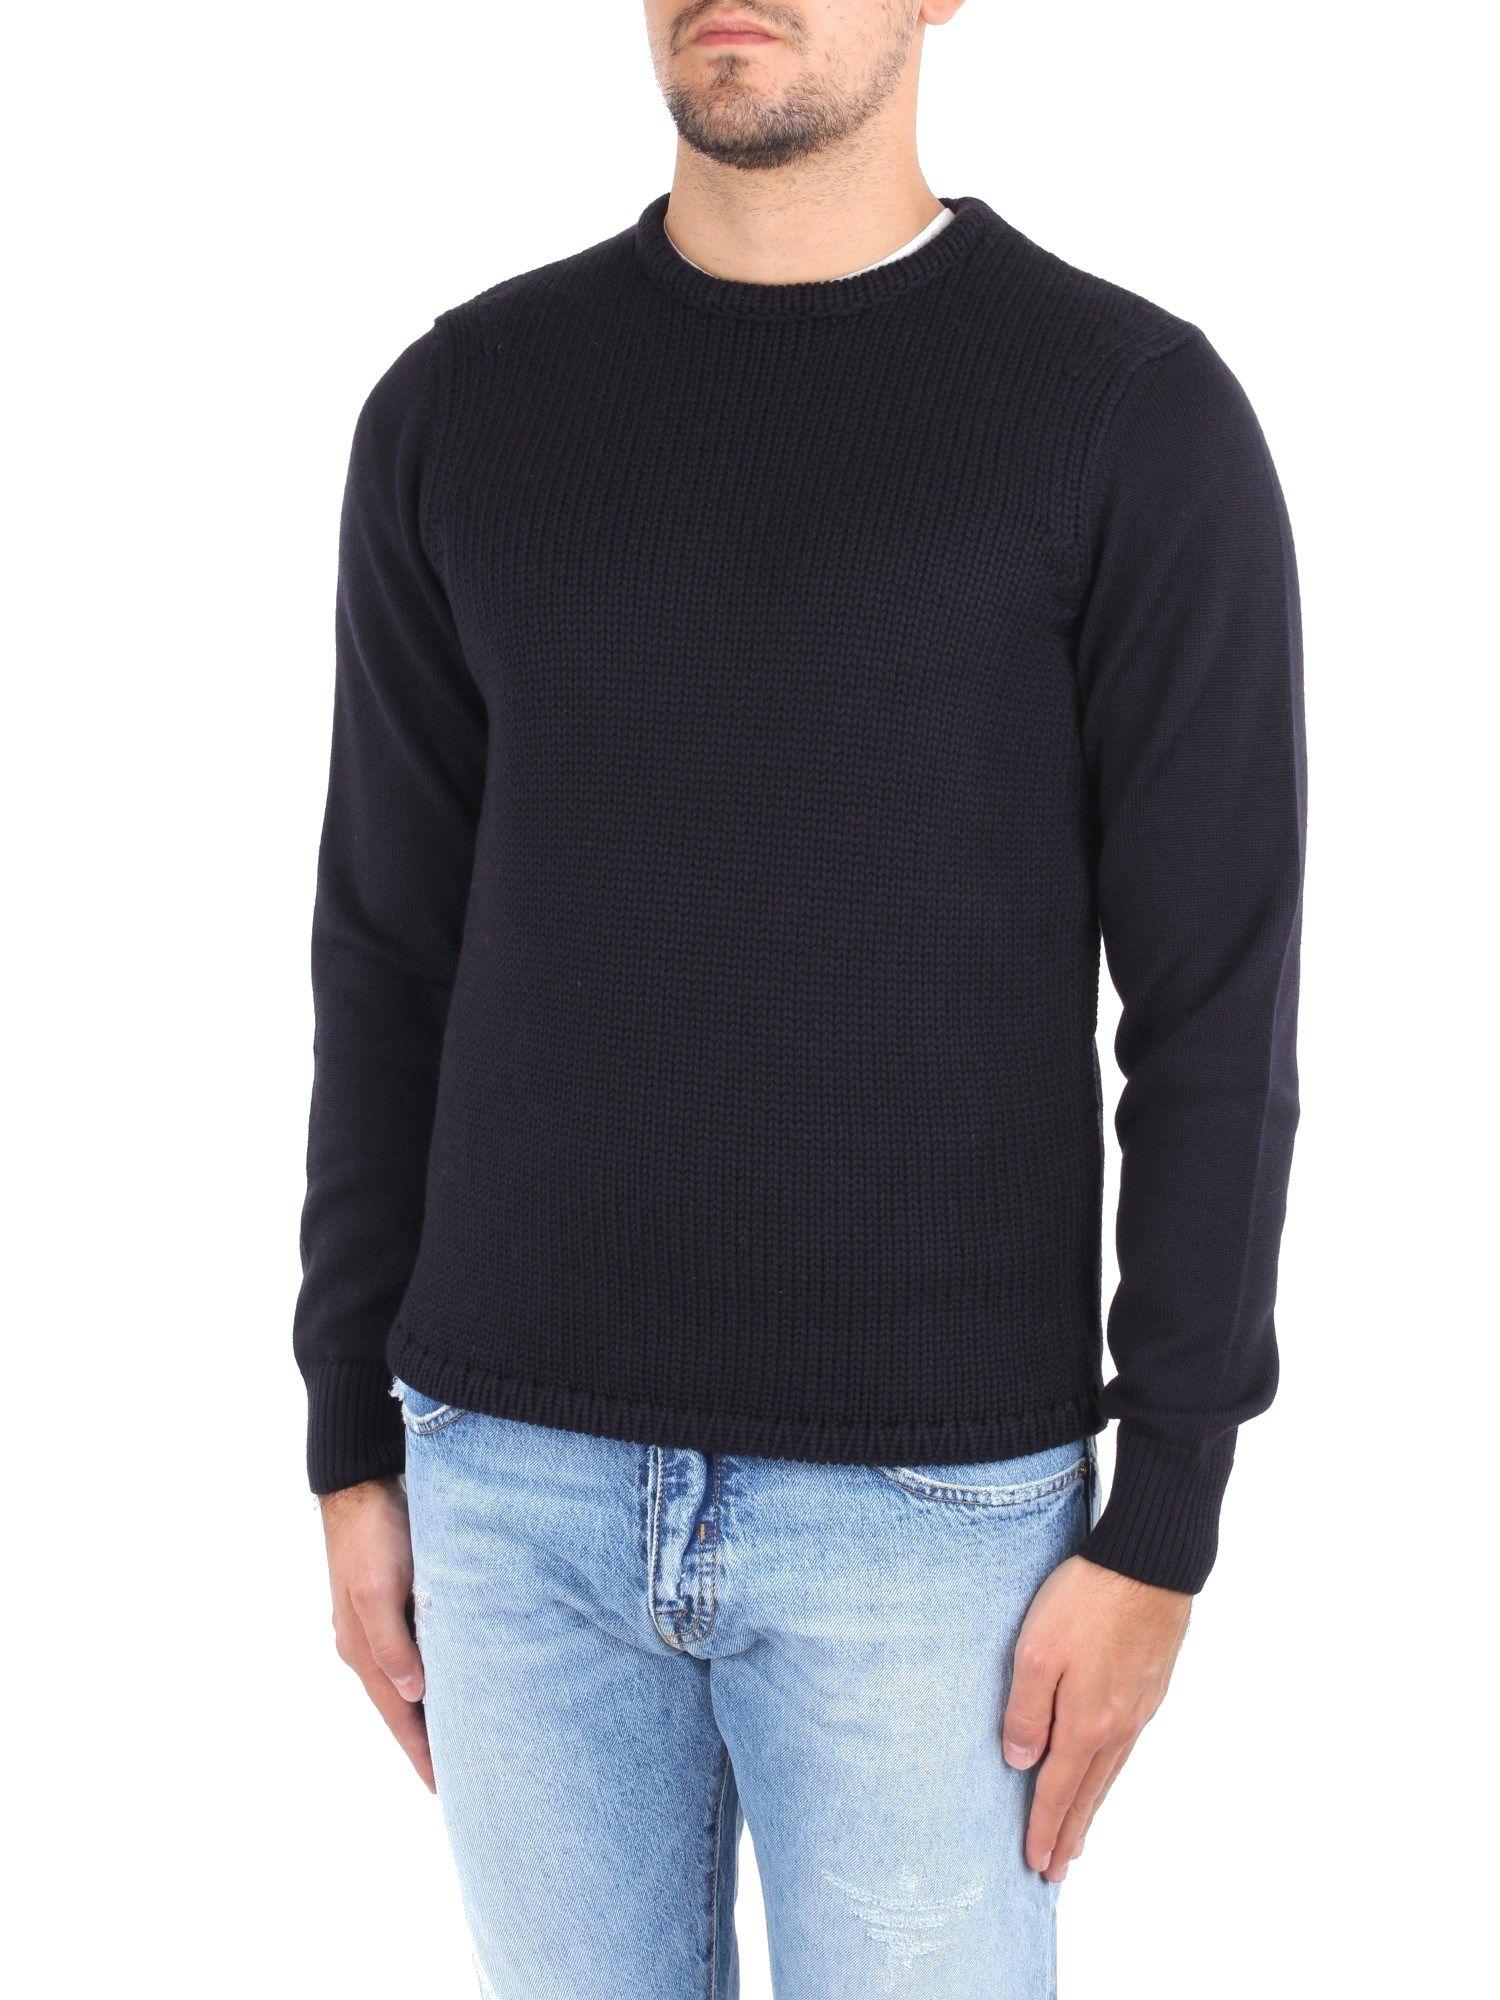 Cruciani Wool Sweater in Blue for Men - Lyst